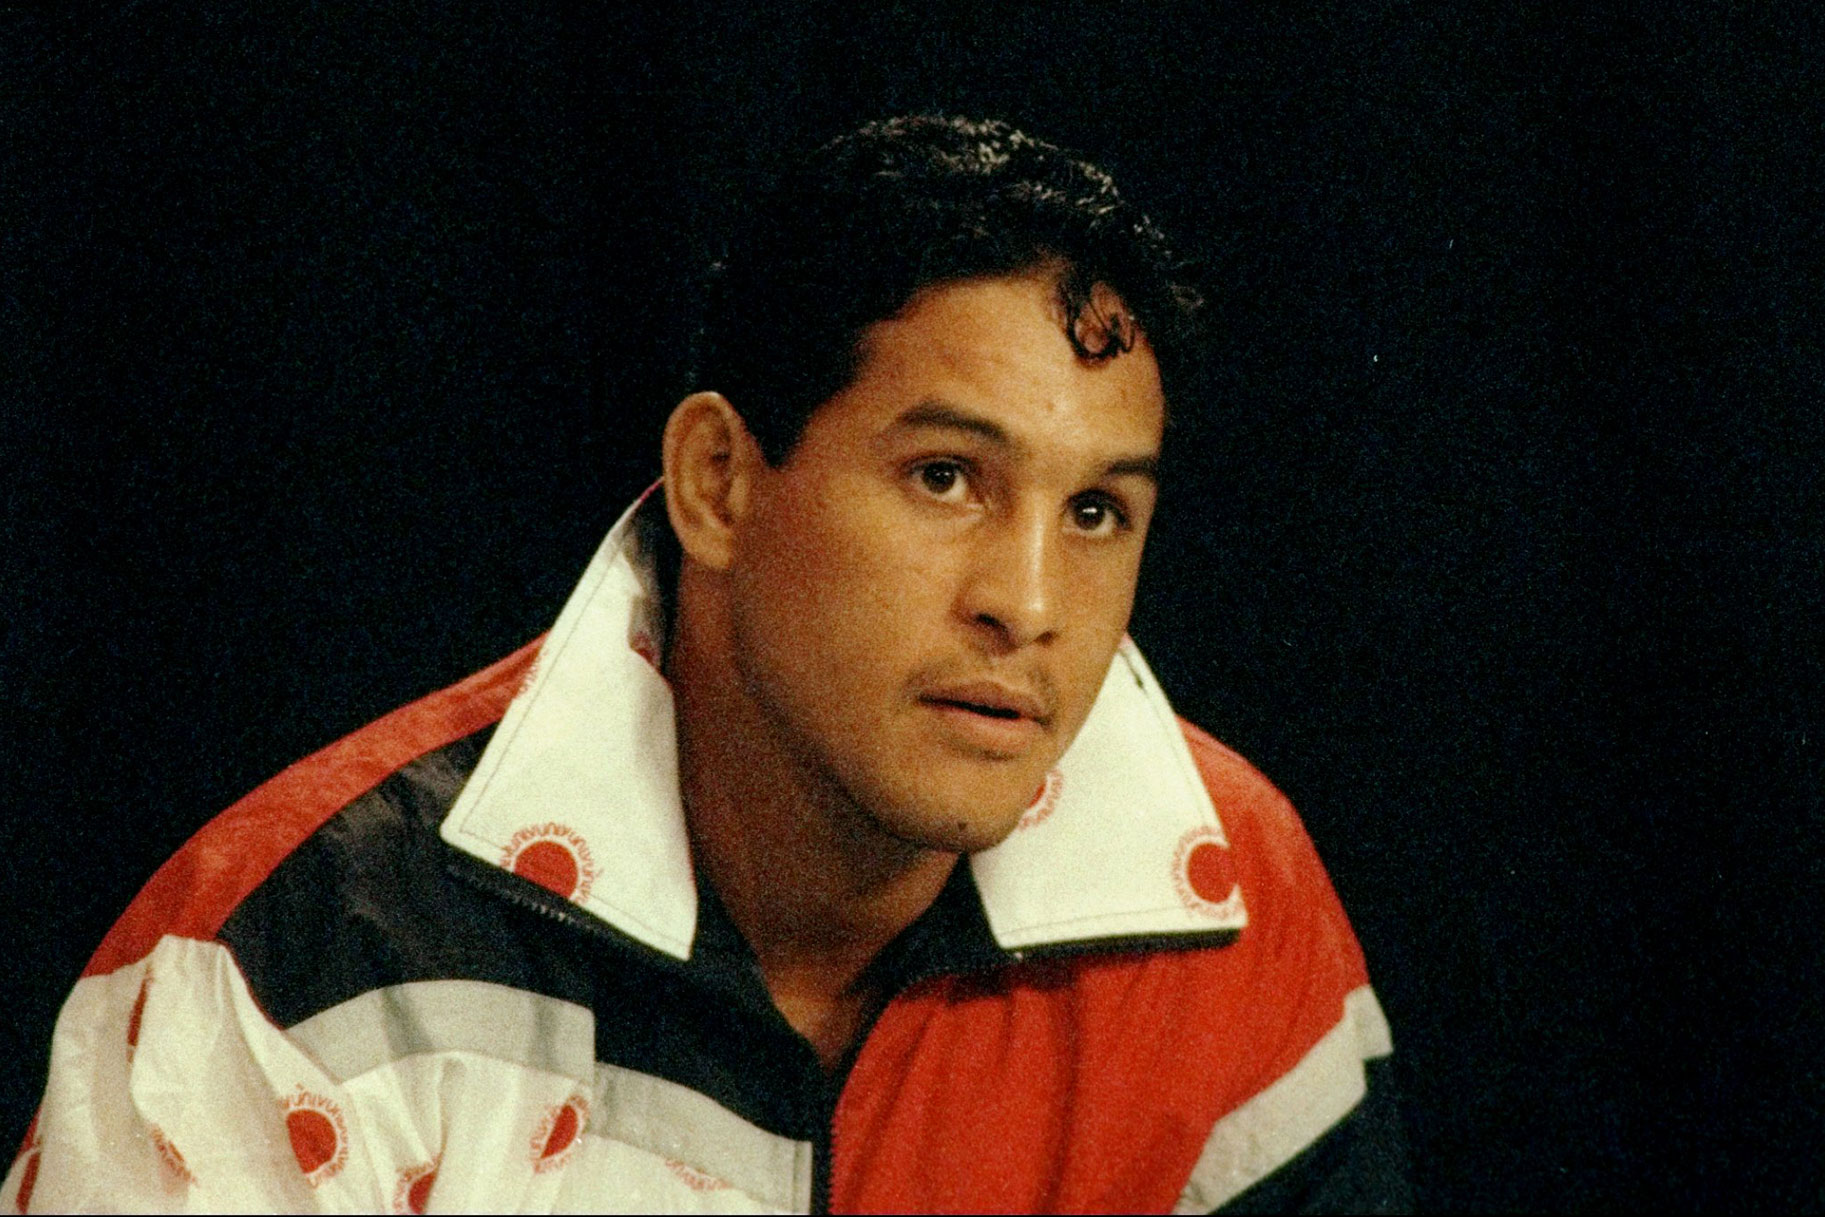 Flamboyance-ul boxerului Hector ‘Macho’ Camacho și fleața în ring l-au condus și pe o cale tulburată în afara ei